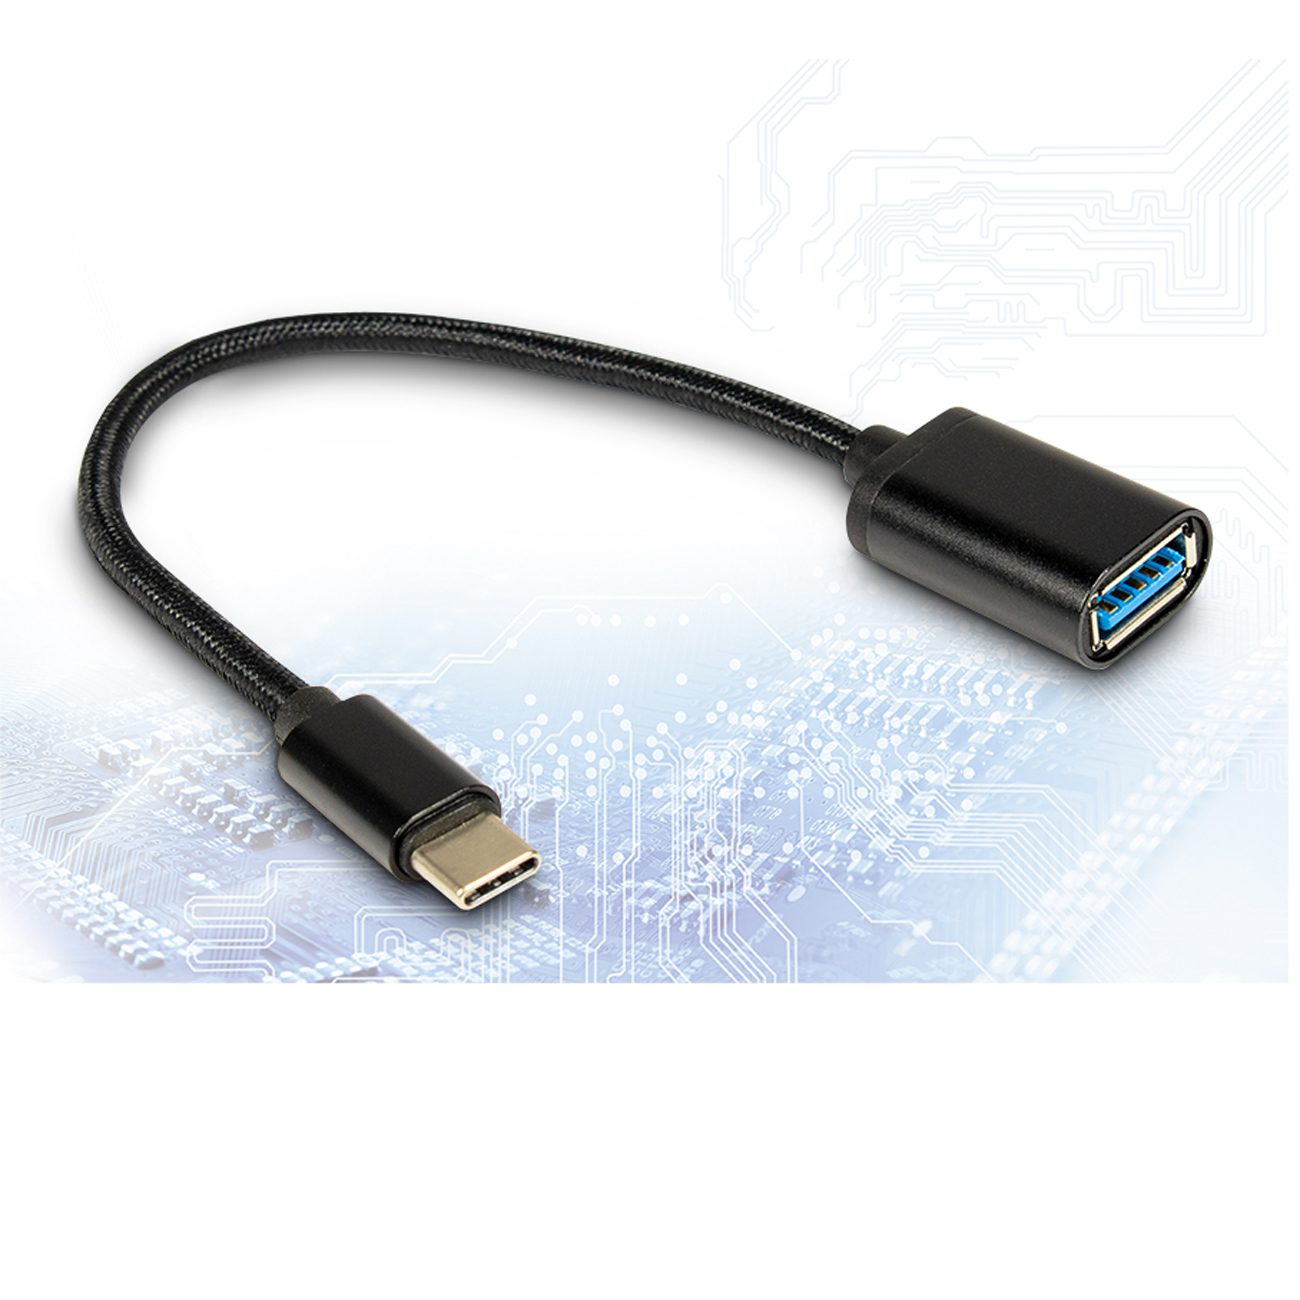 Inter-Tech Kabel USB 3.0 Type A(Bu) auf Type C(ST), schwarz